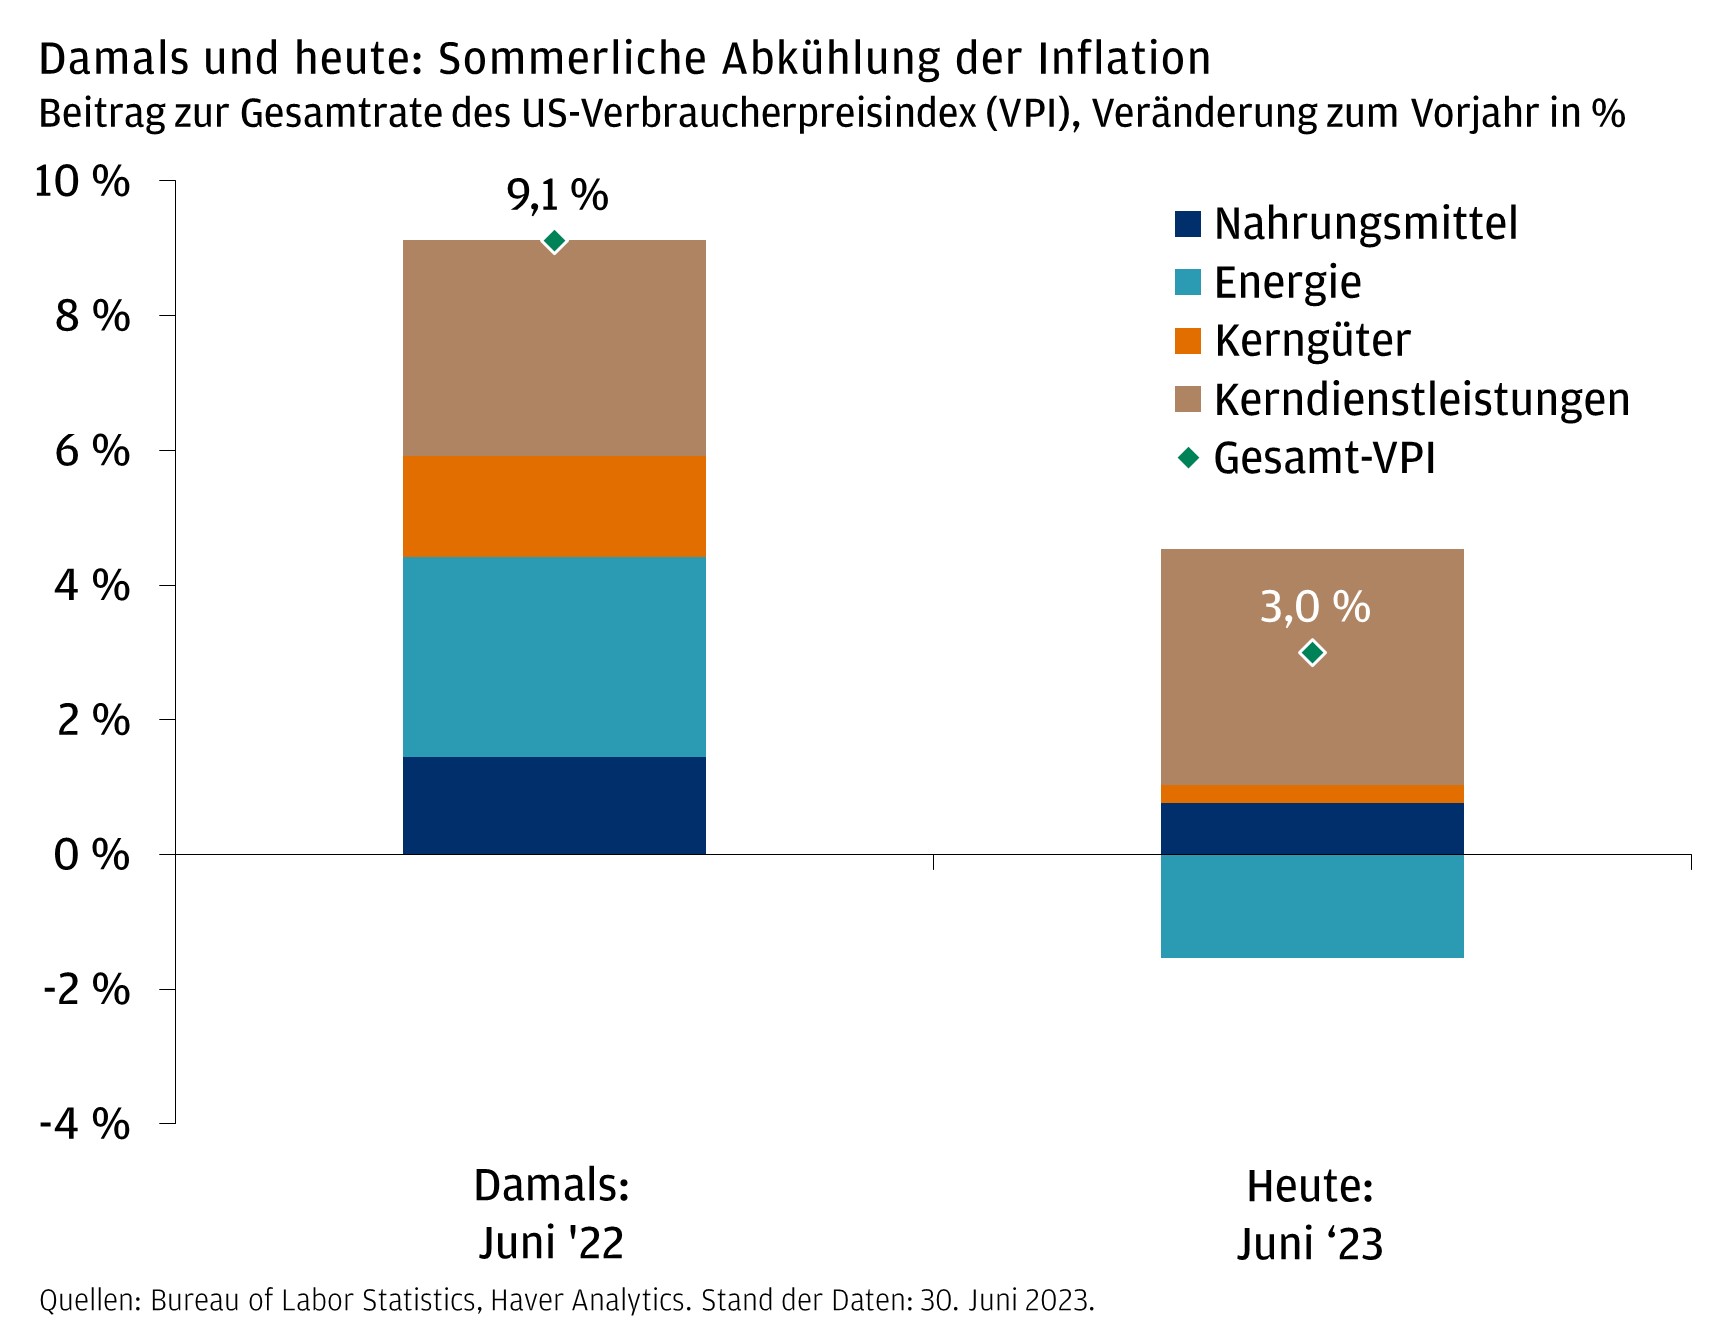 Damals und heute: Sommerliche Abkühlung der Inflation